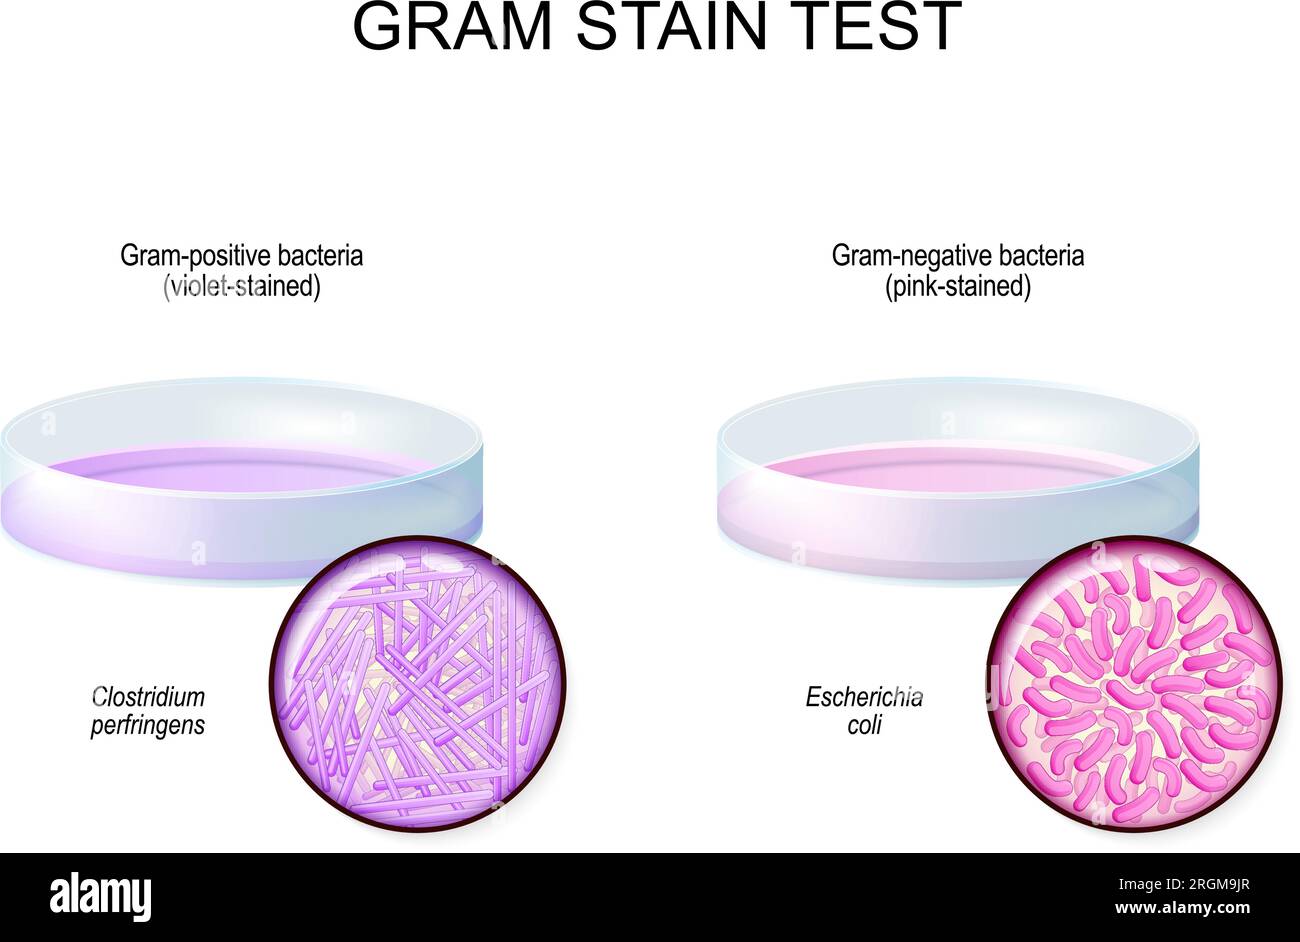 Test de coloration de Gram. Boîte de Pétri en verre avec culture de bactéries Gram-négatives Escherichia coli après utilisation d'une coloration au cristal violet. Gros plan de Gram positif Illustration de Vecteur